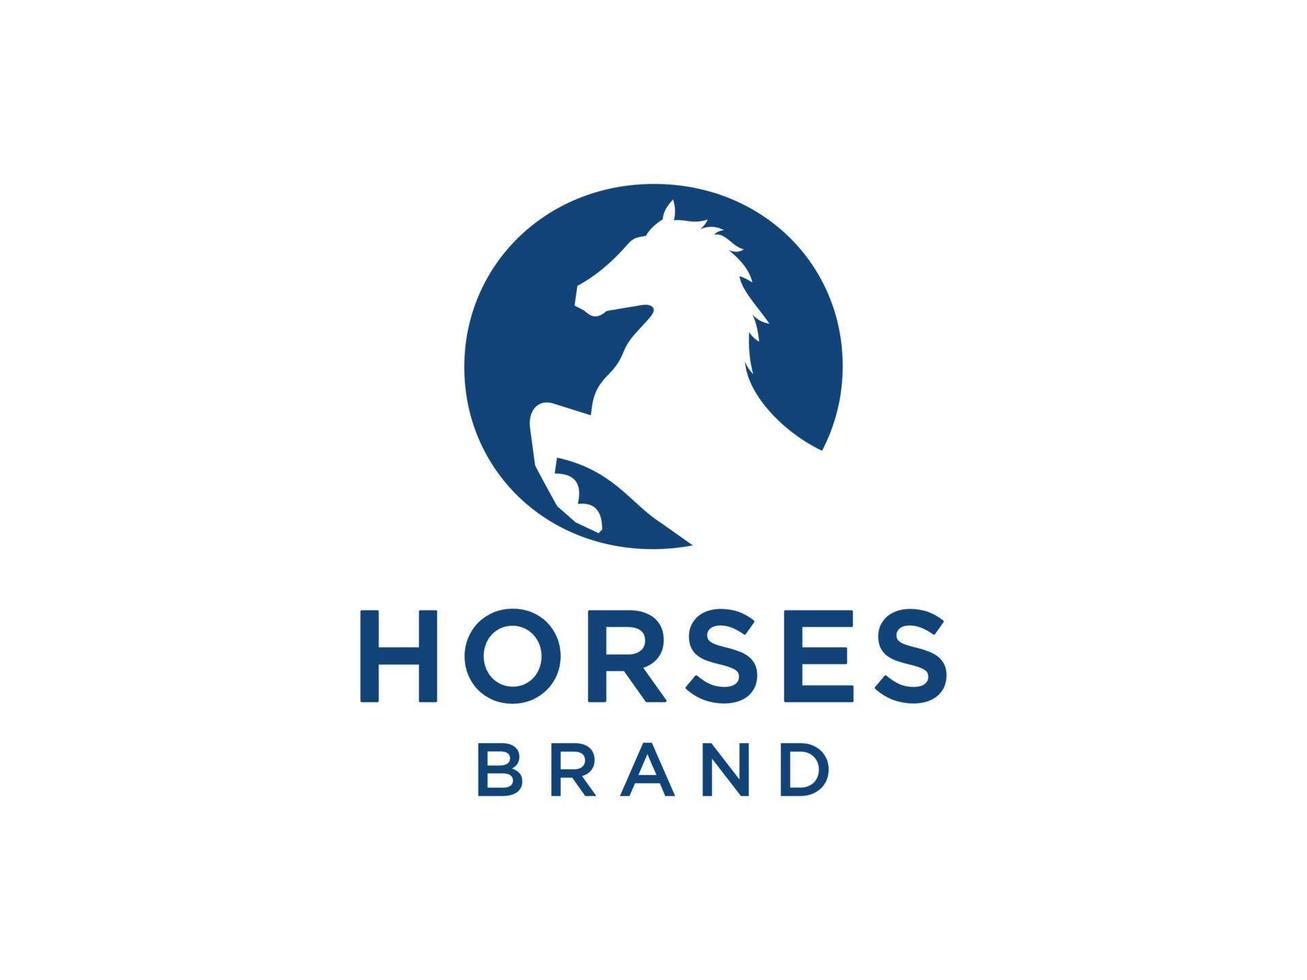 il design del logo con la lettera iniziale o è abbinato a un moderno e professionale simbolo della testa di cavallo vettore